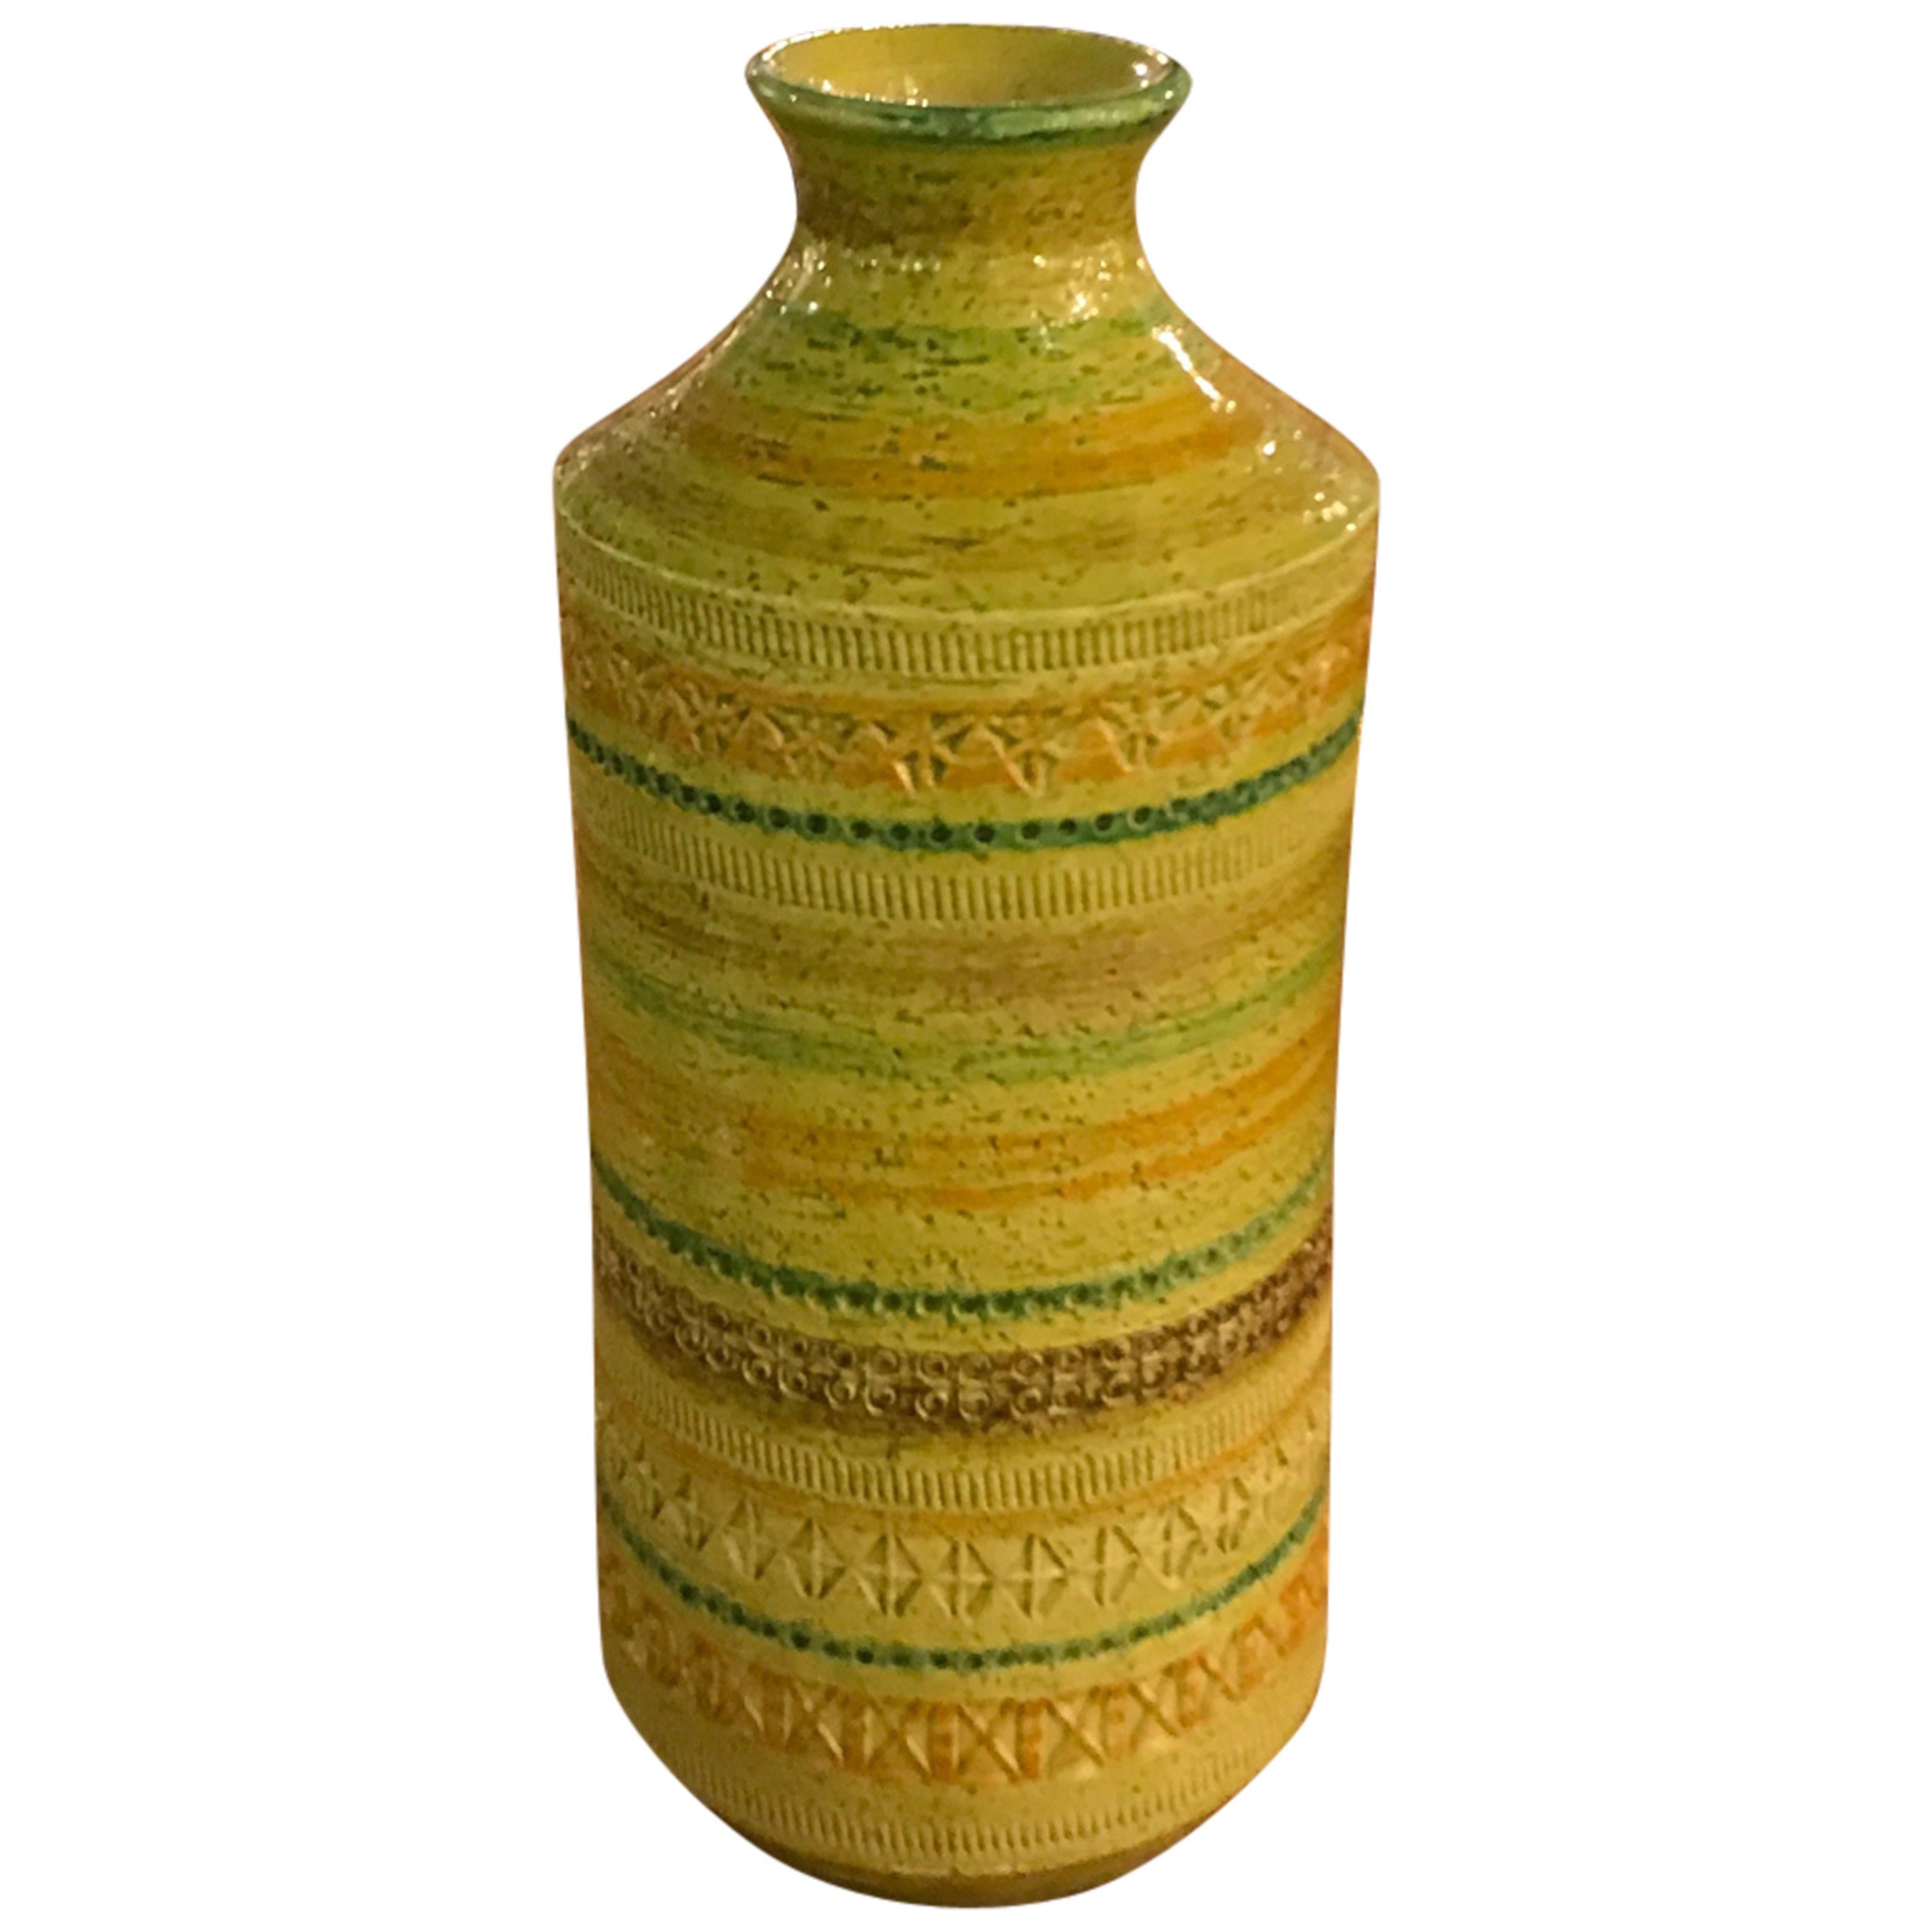 Vibrant Glazed Aldo Londi Vase by Rosenthal